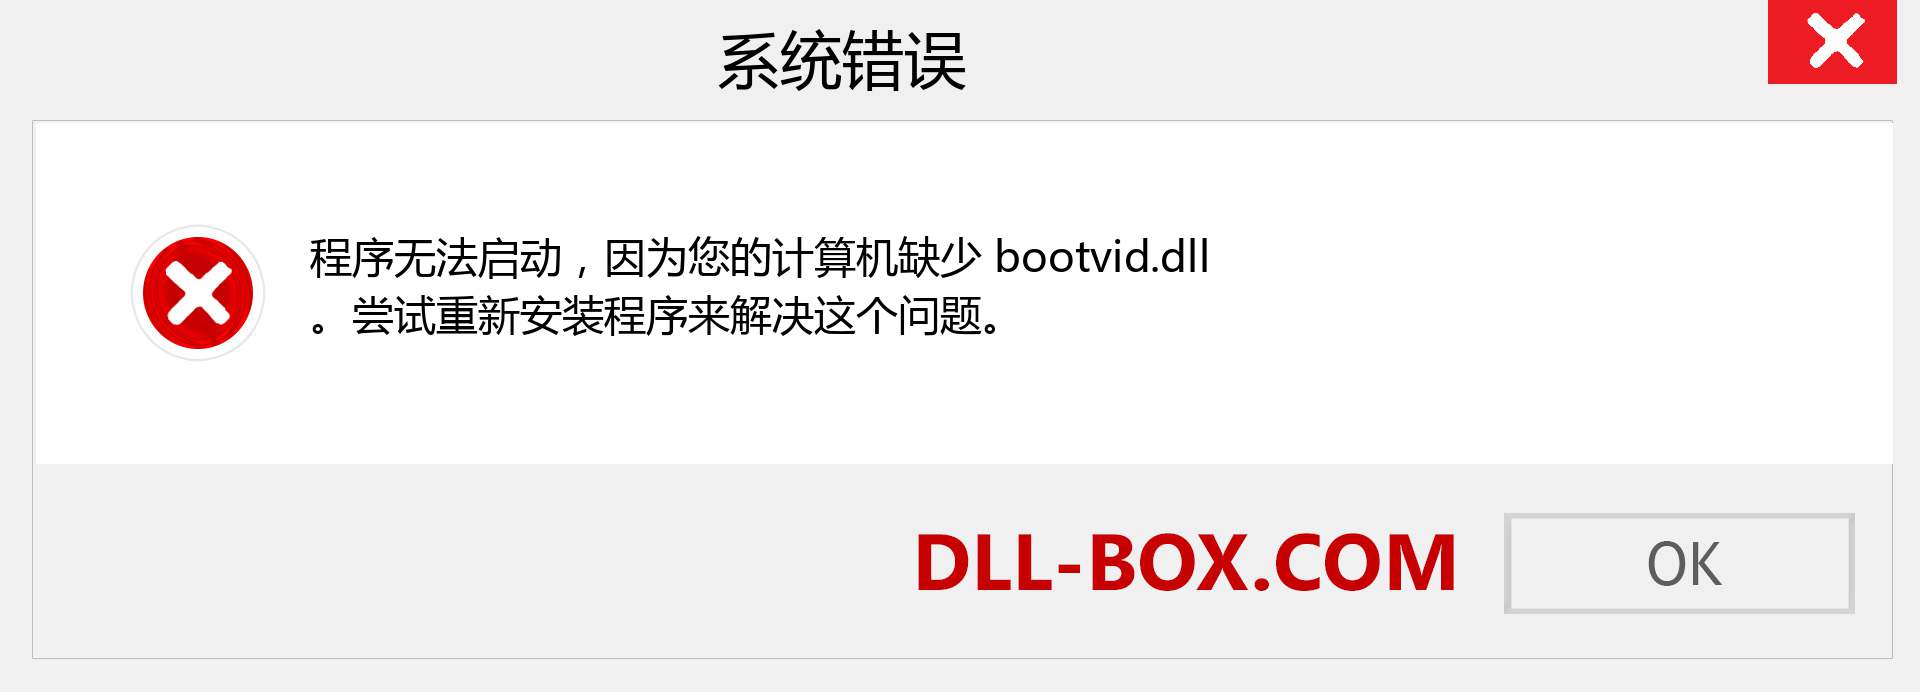 bootvid.dll 文件丢失？。 适用于 Windows 7、8、10 的下载 - 修复 Windows、照片、图像上的 bootvid dll 丢失错误